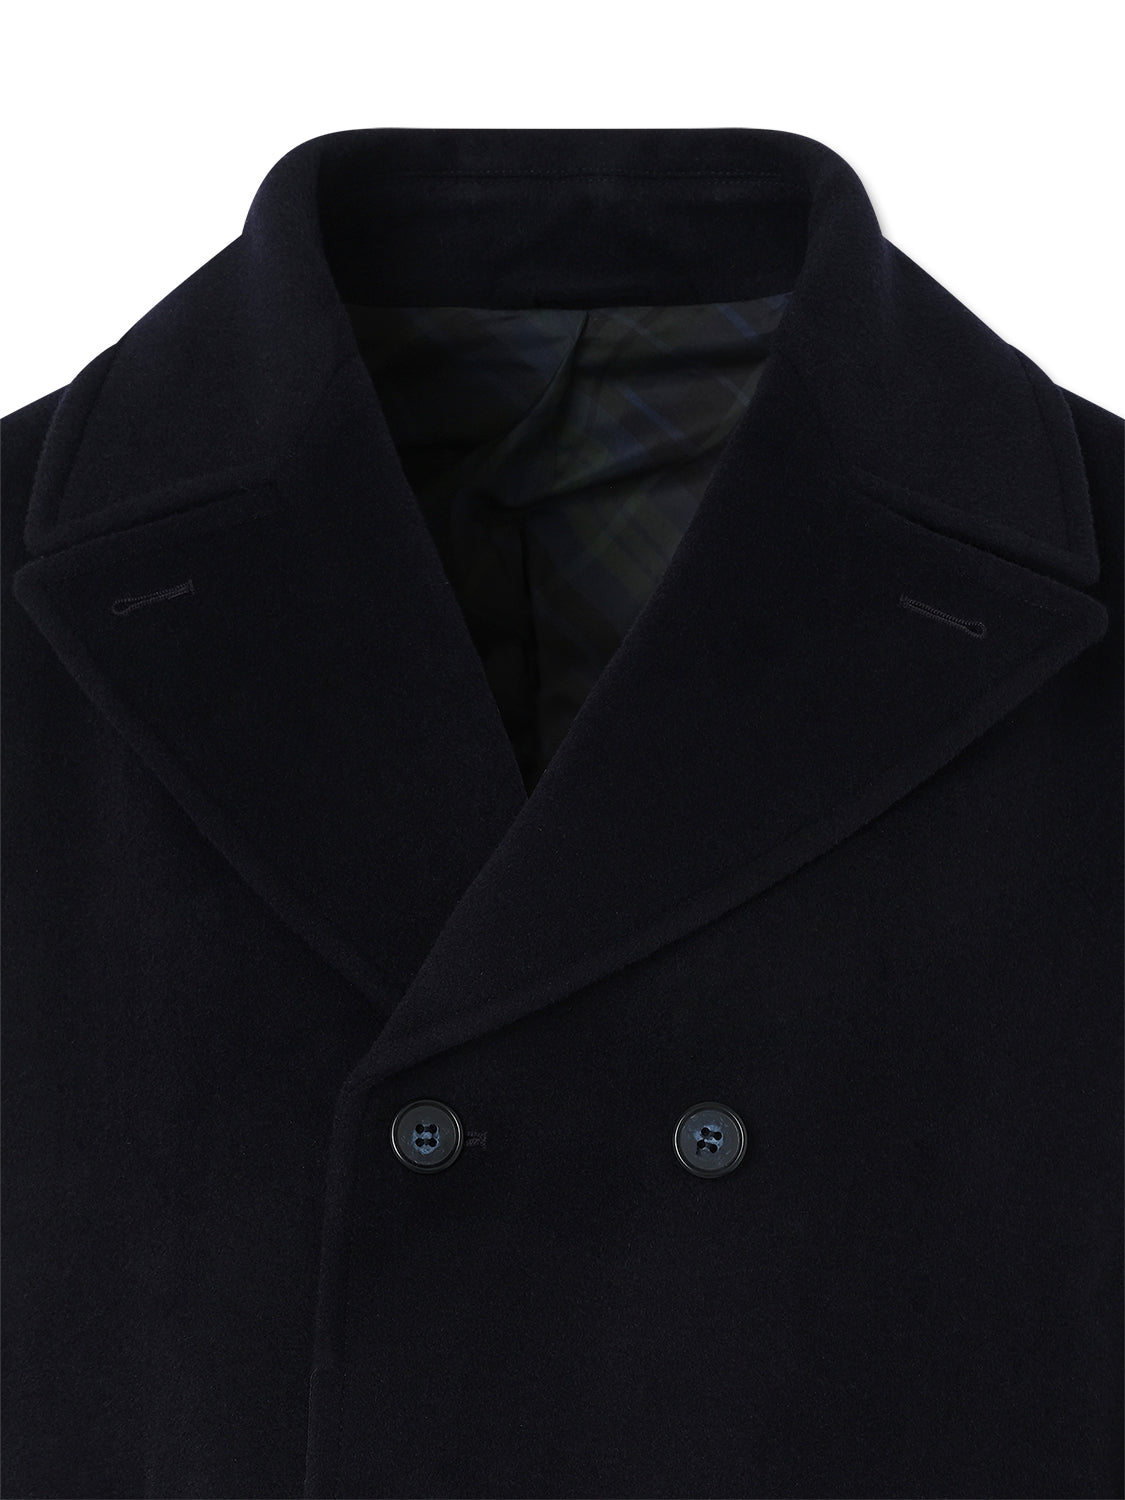 Navy Pea Coat